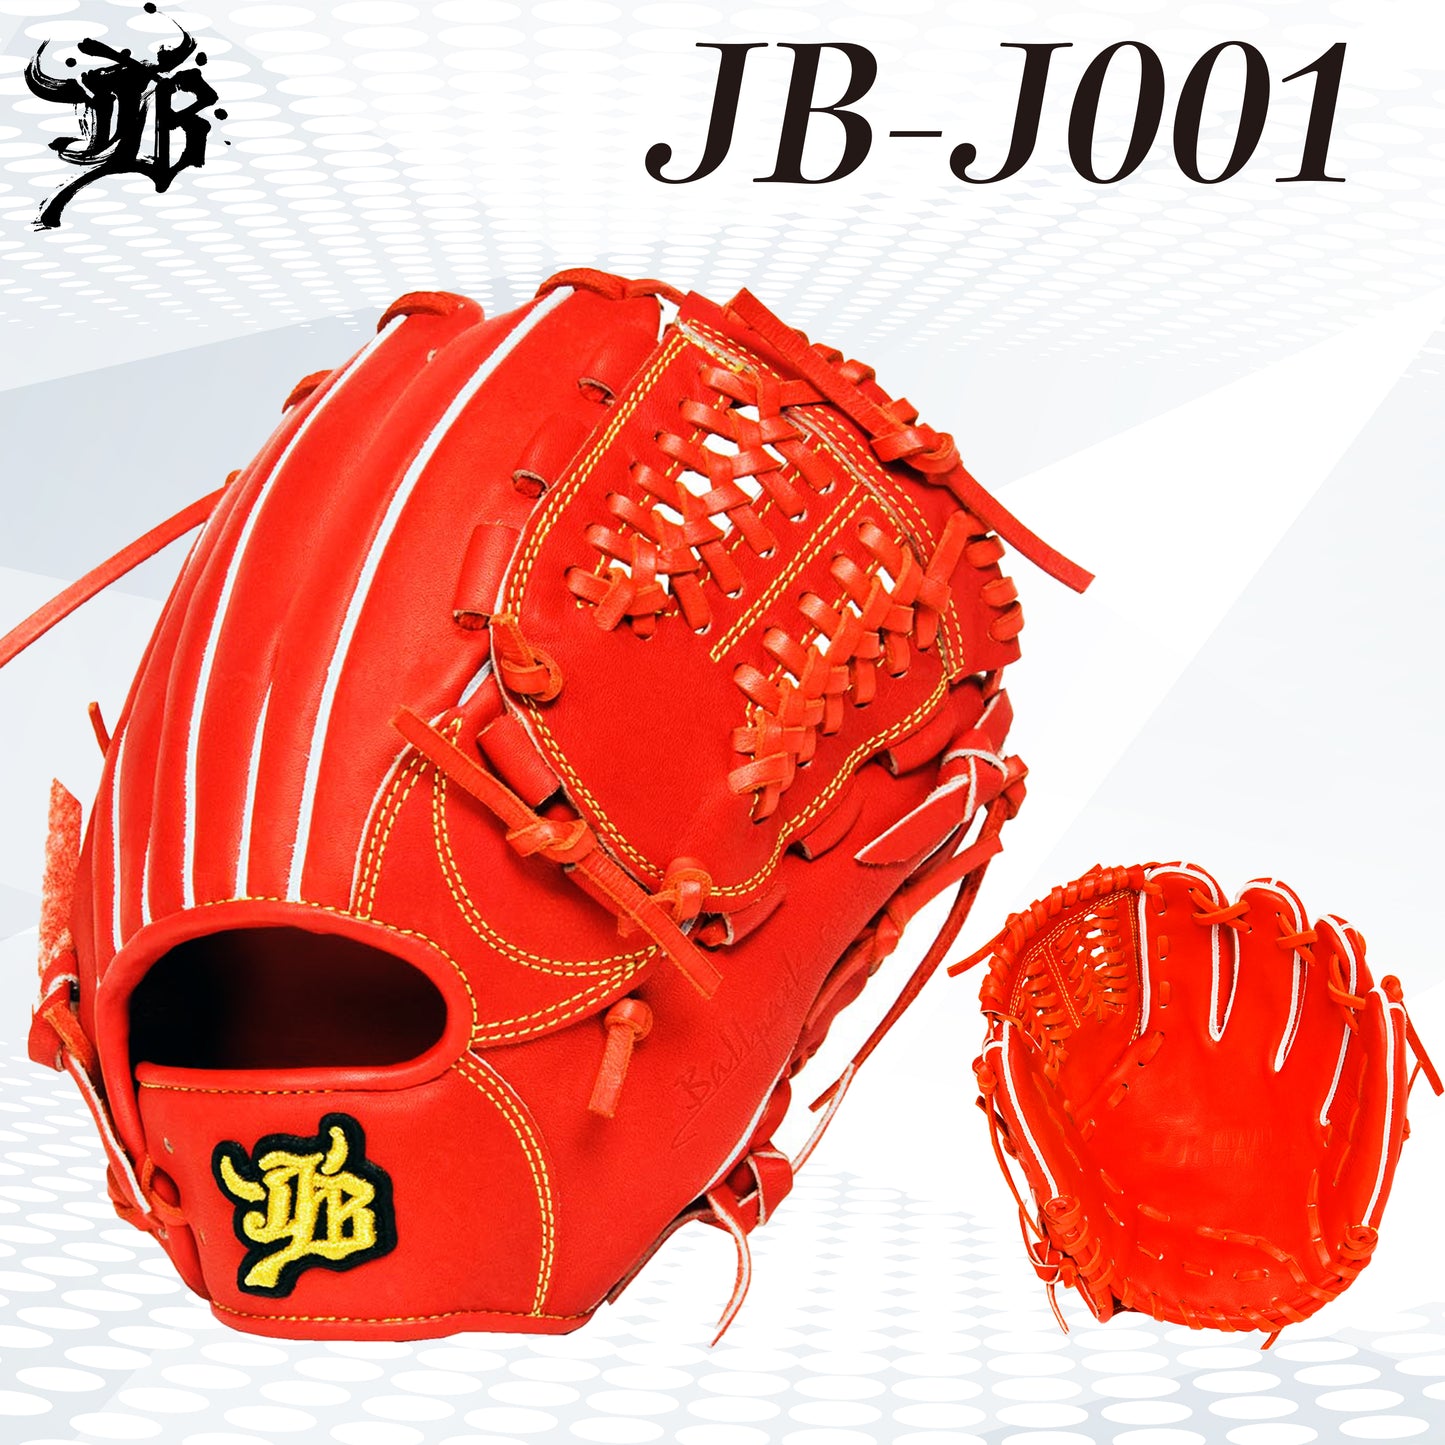 和牛JBグラブ/ジュニア用/Lサイズ/JB-J001/型付け可能 - ボールパークドットコム